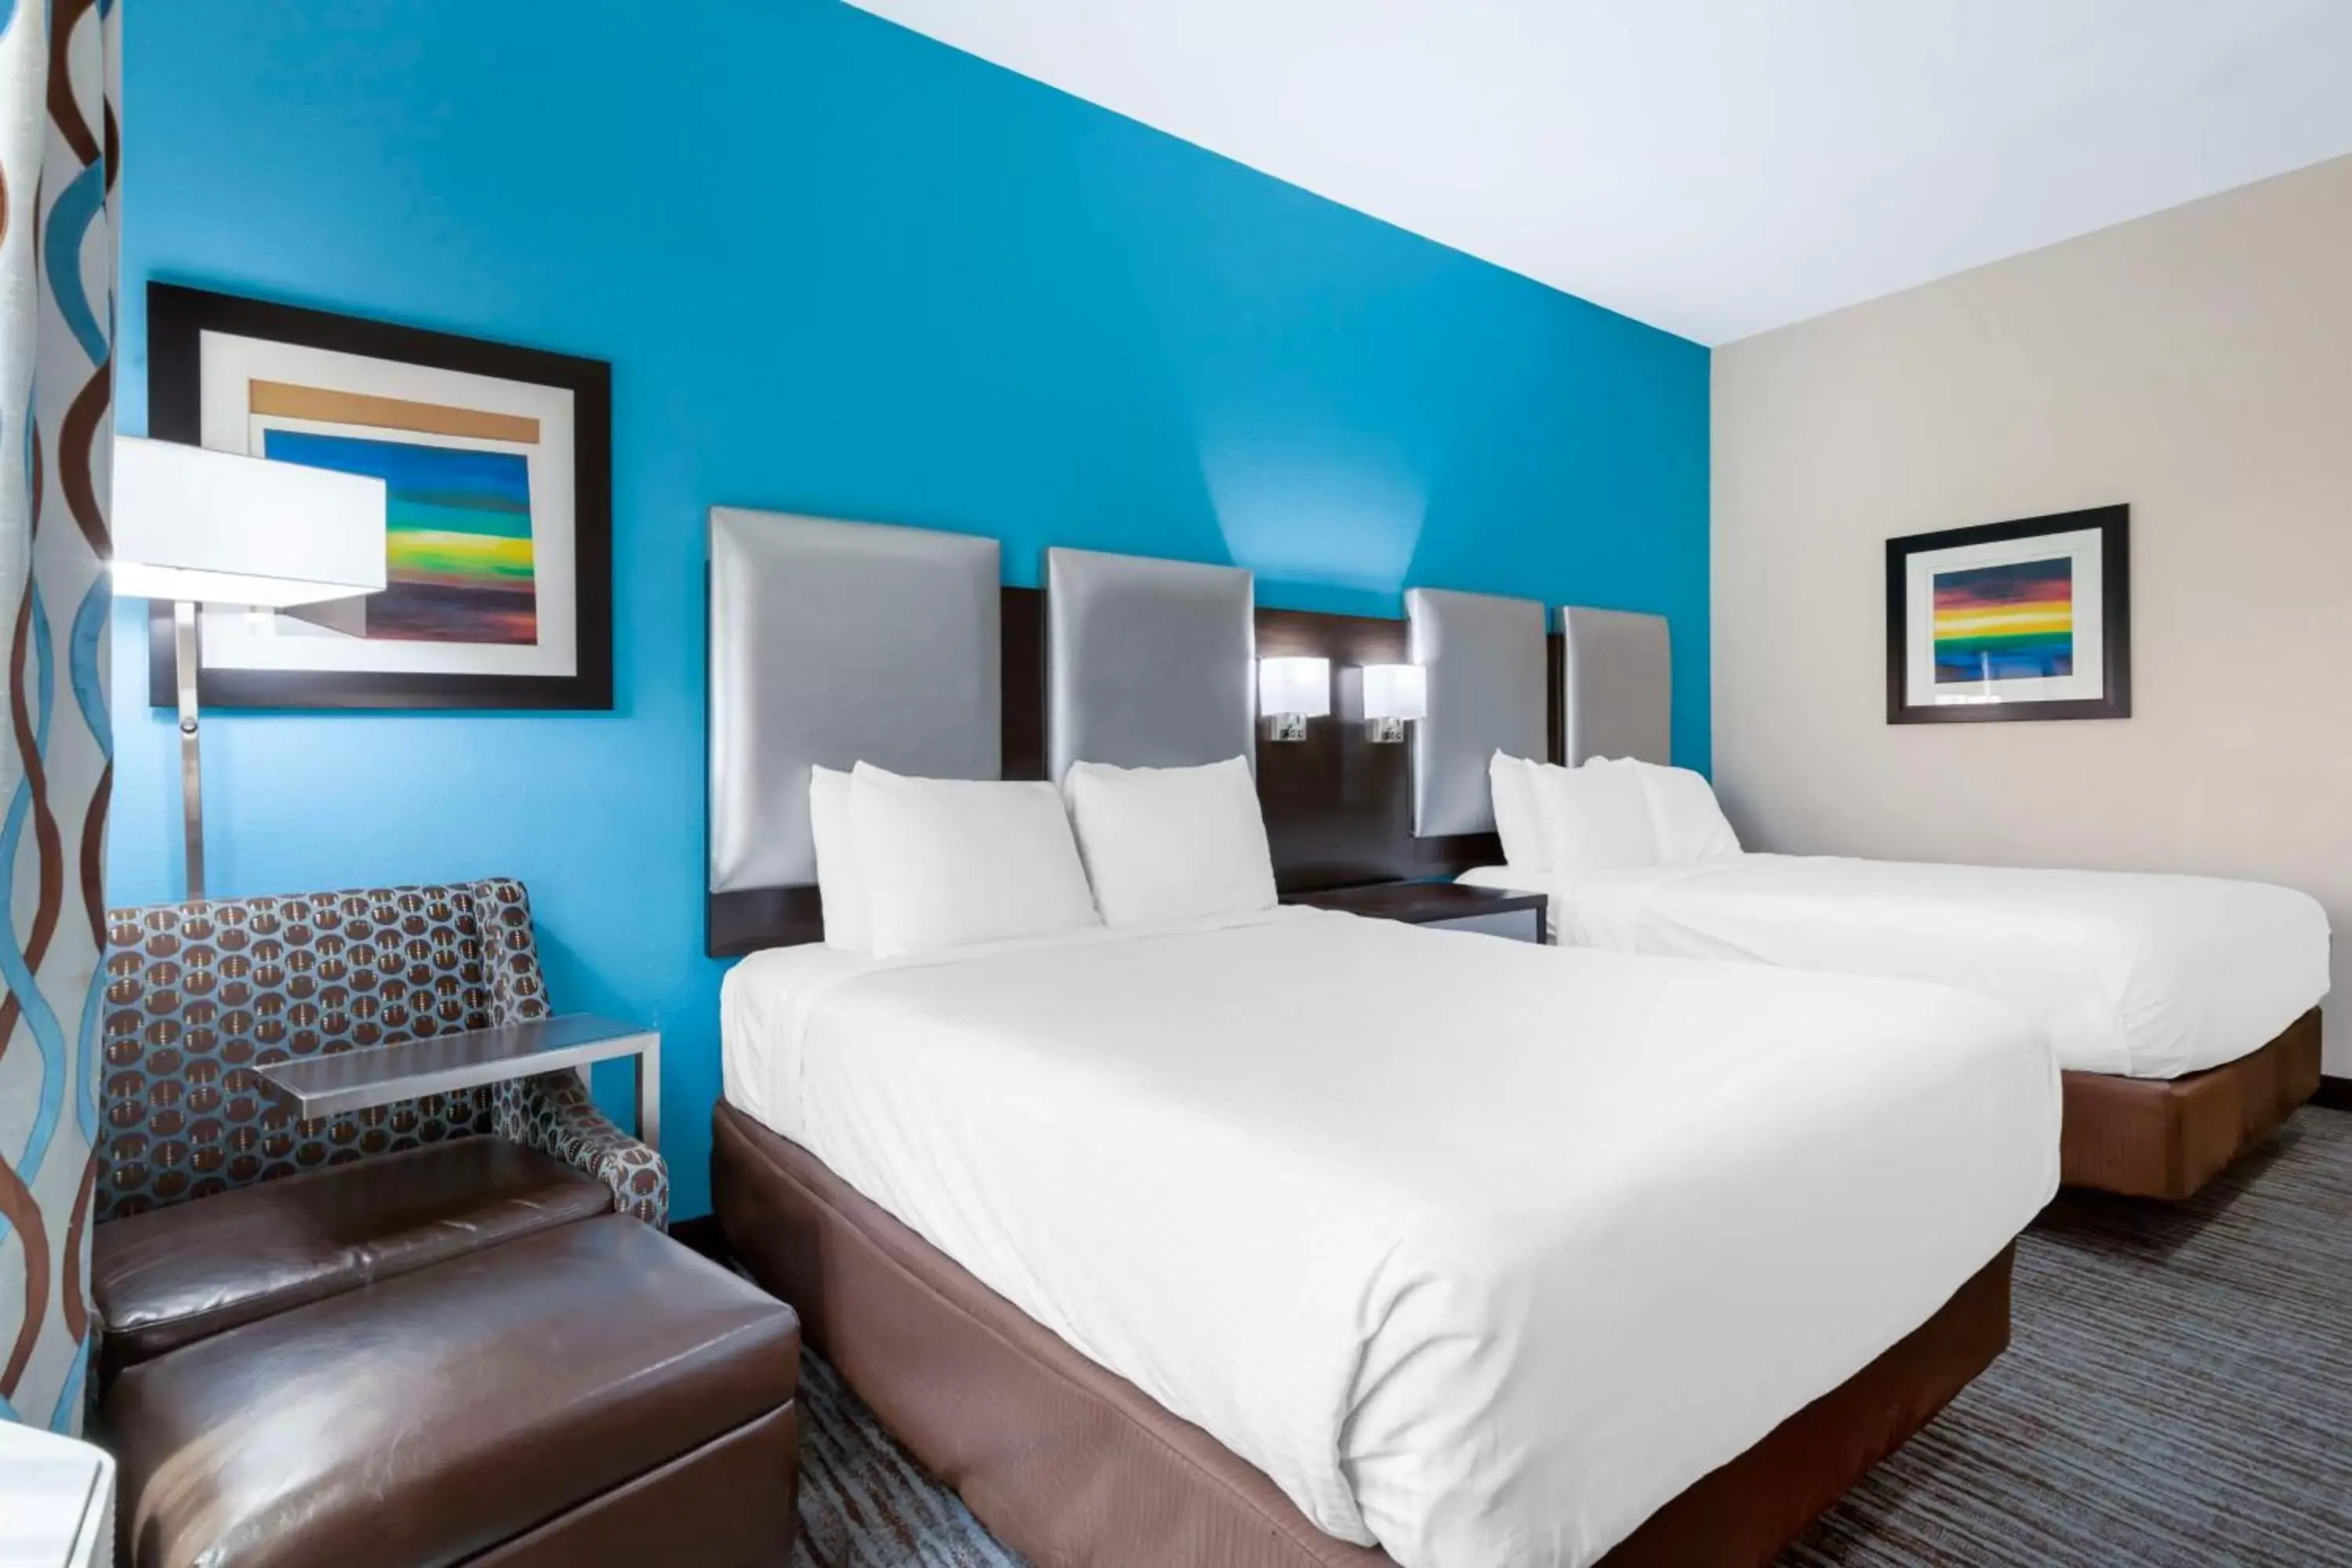 Bedroom, Bed in Best Western Plus Pleasanton Hotel